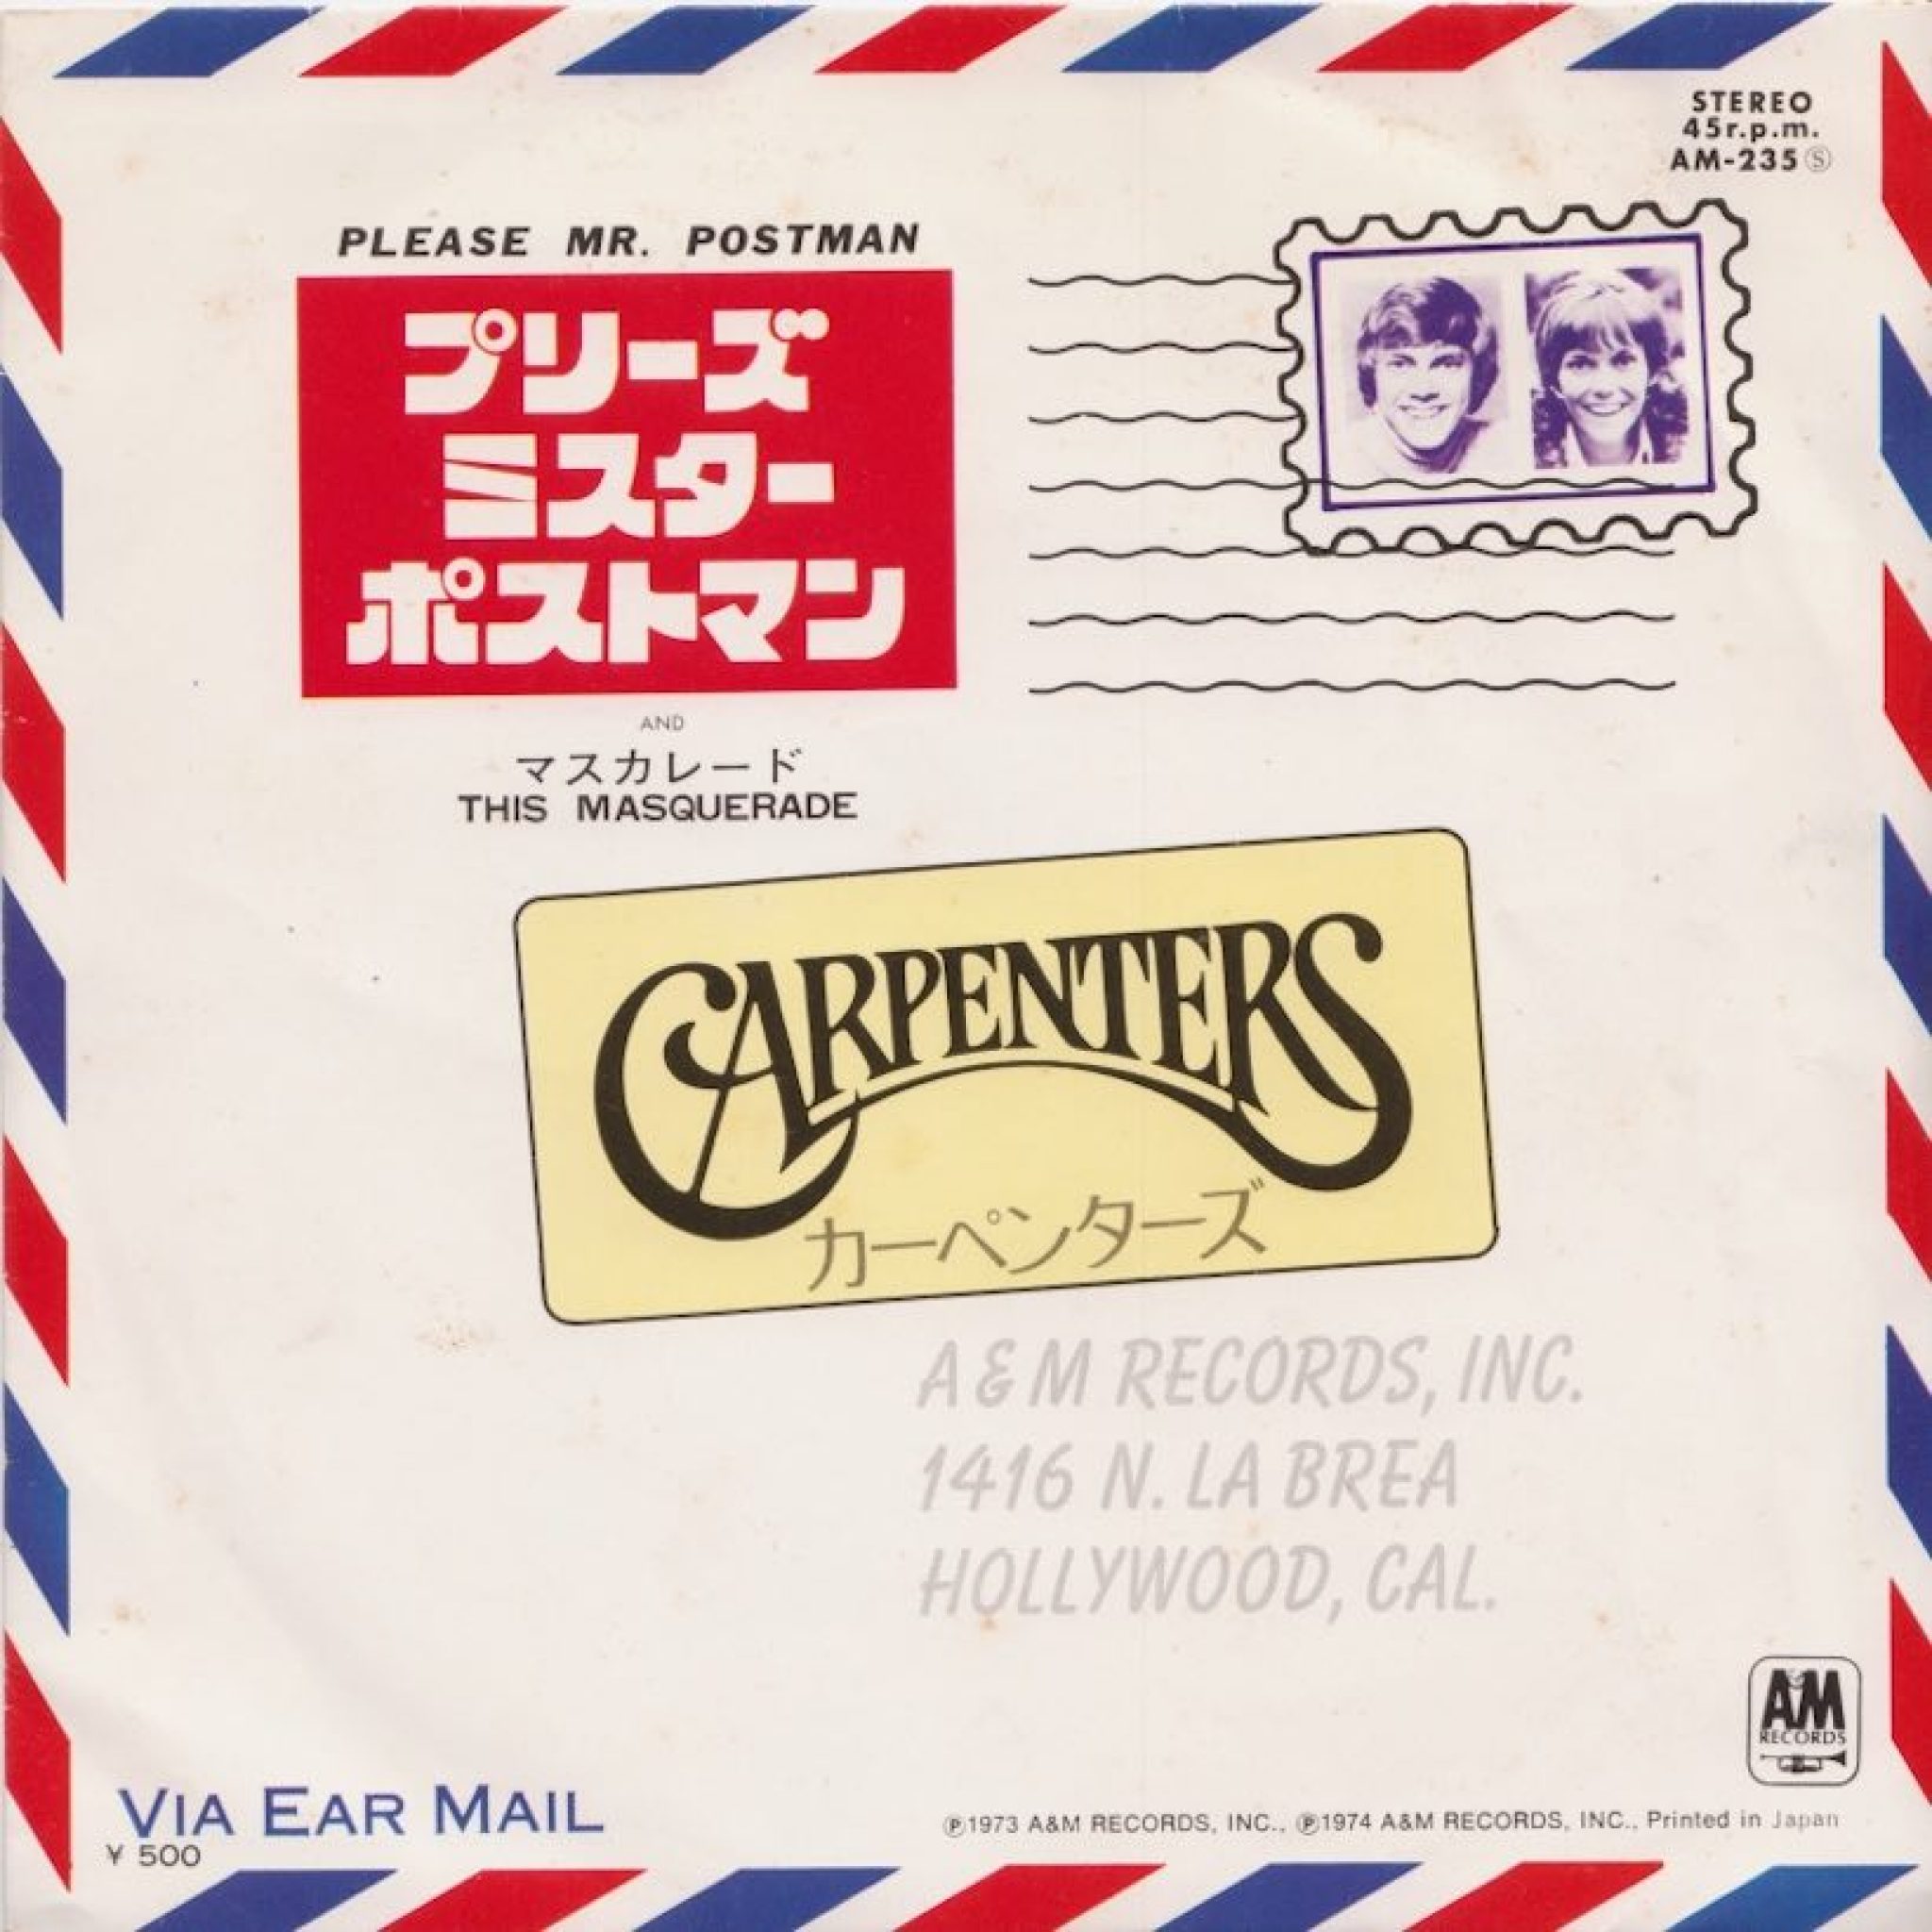 Mr postman. Please Mr Postman. The Marvelettes please Mr. Postman. The Carpenters please Mr. Postman. Please Mr. Postman - Single.